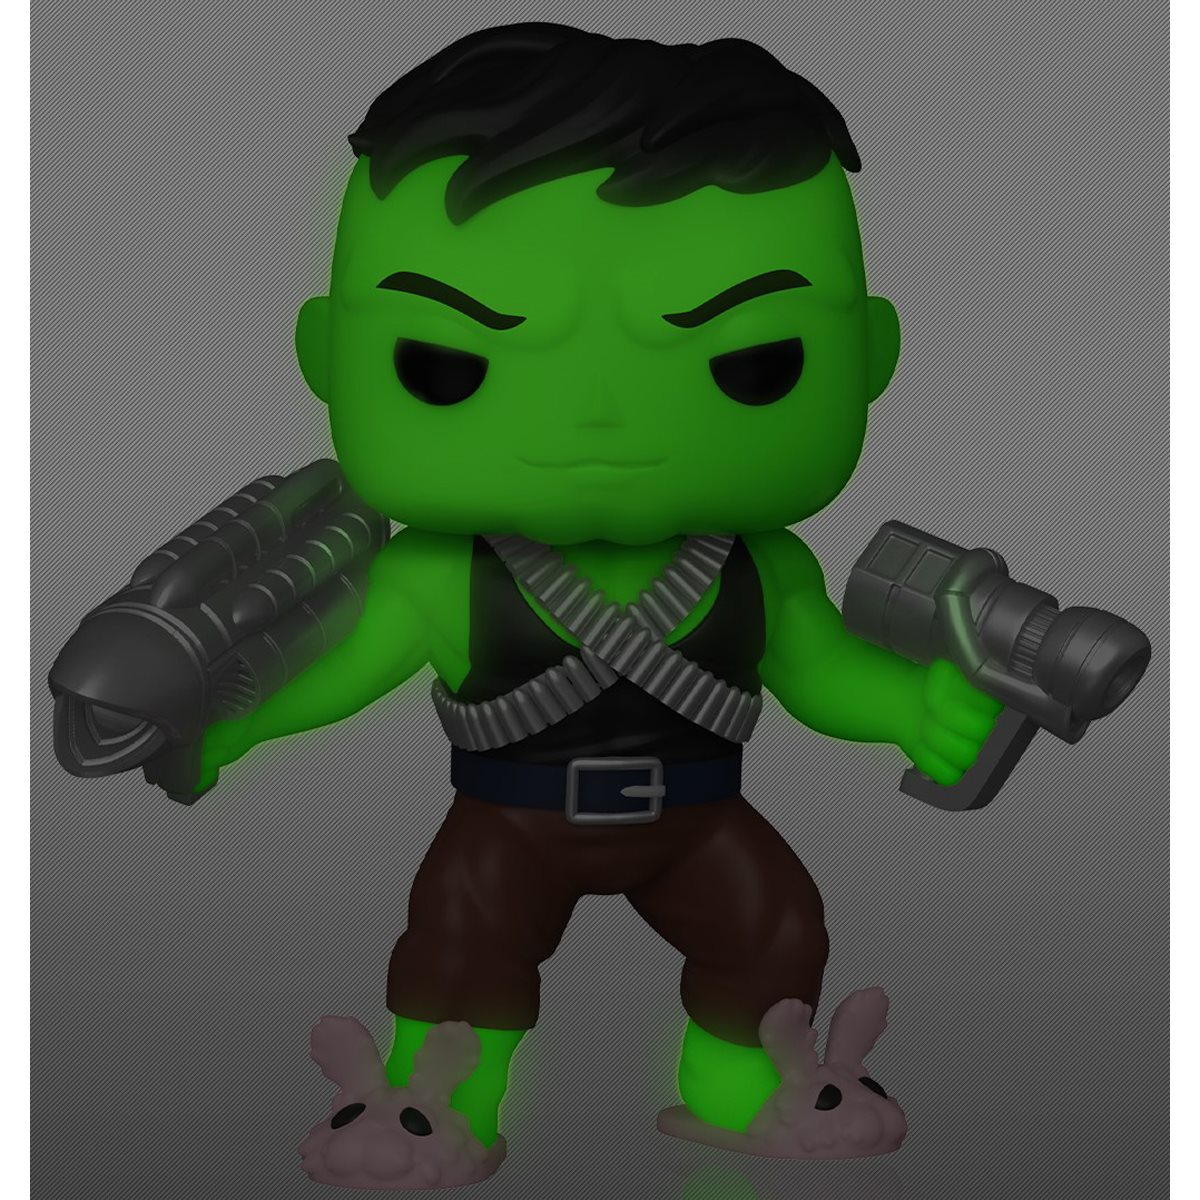 Figura Funko Pop! Immortal Hulk y Comic PX Marvel